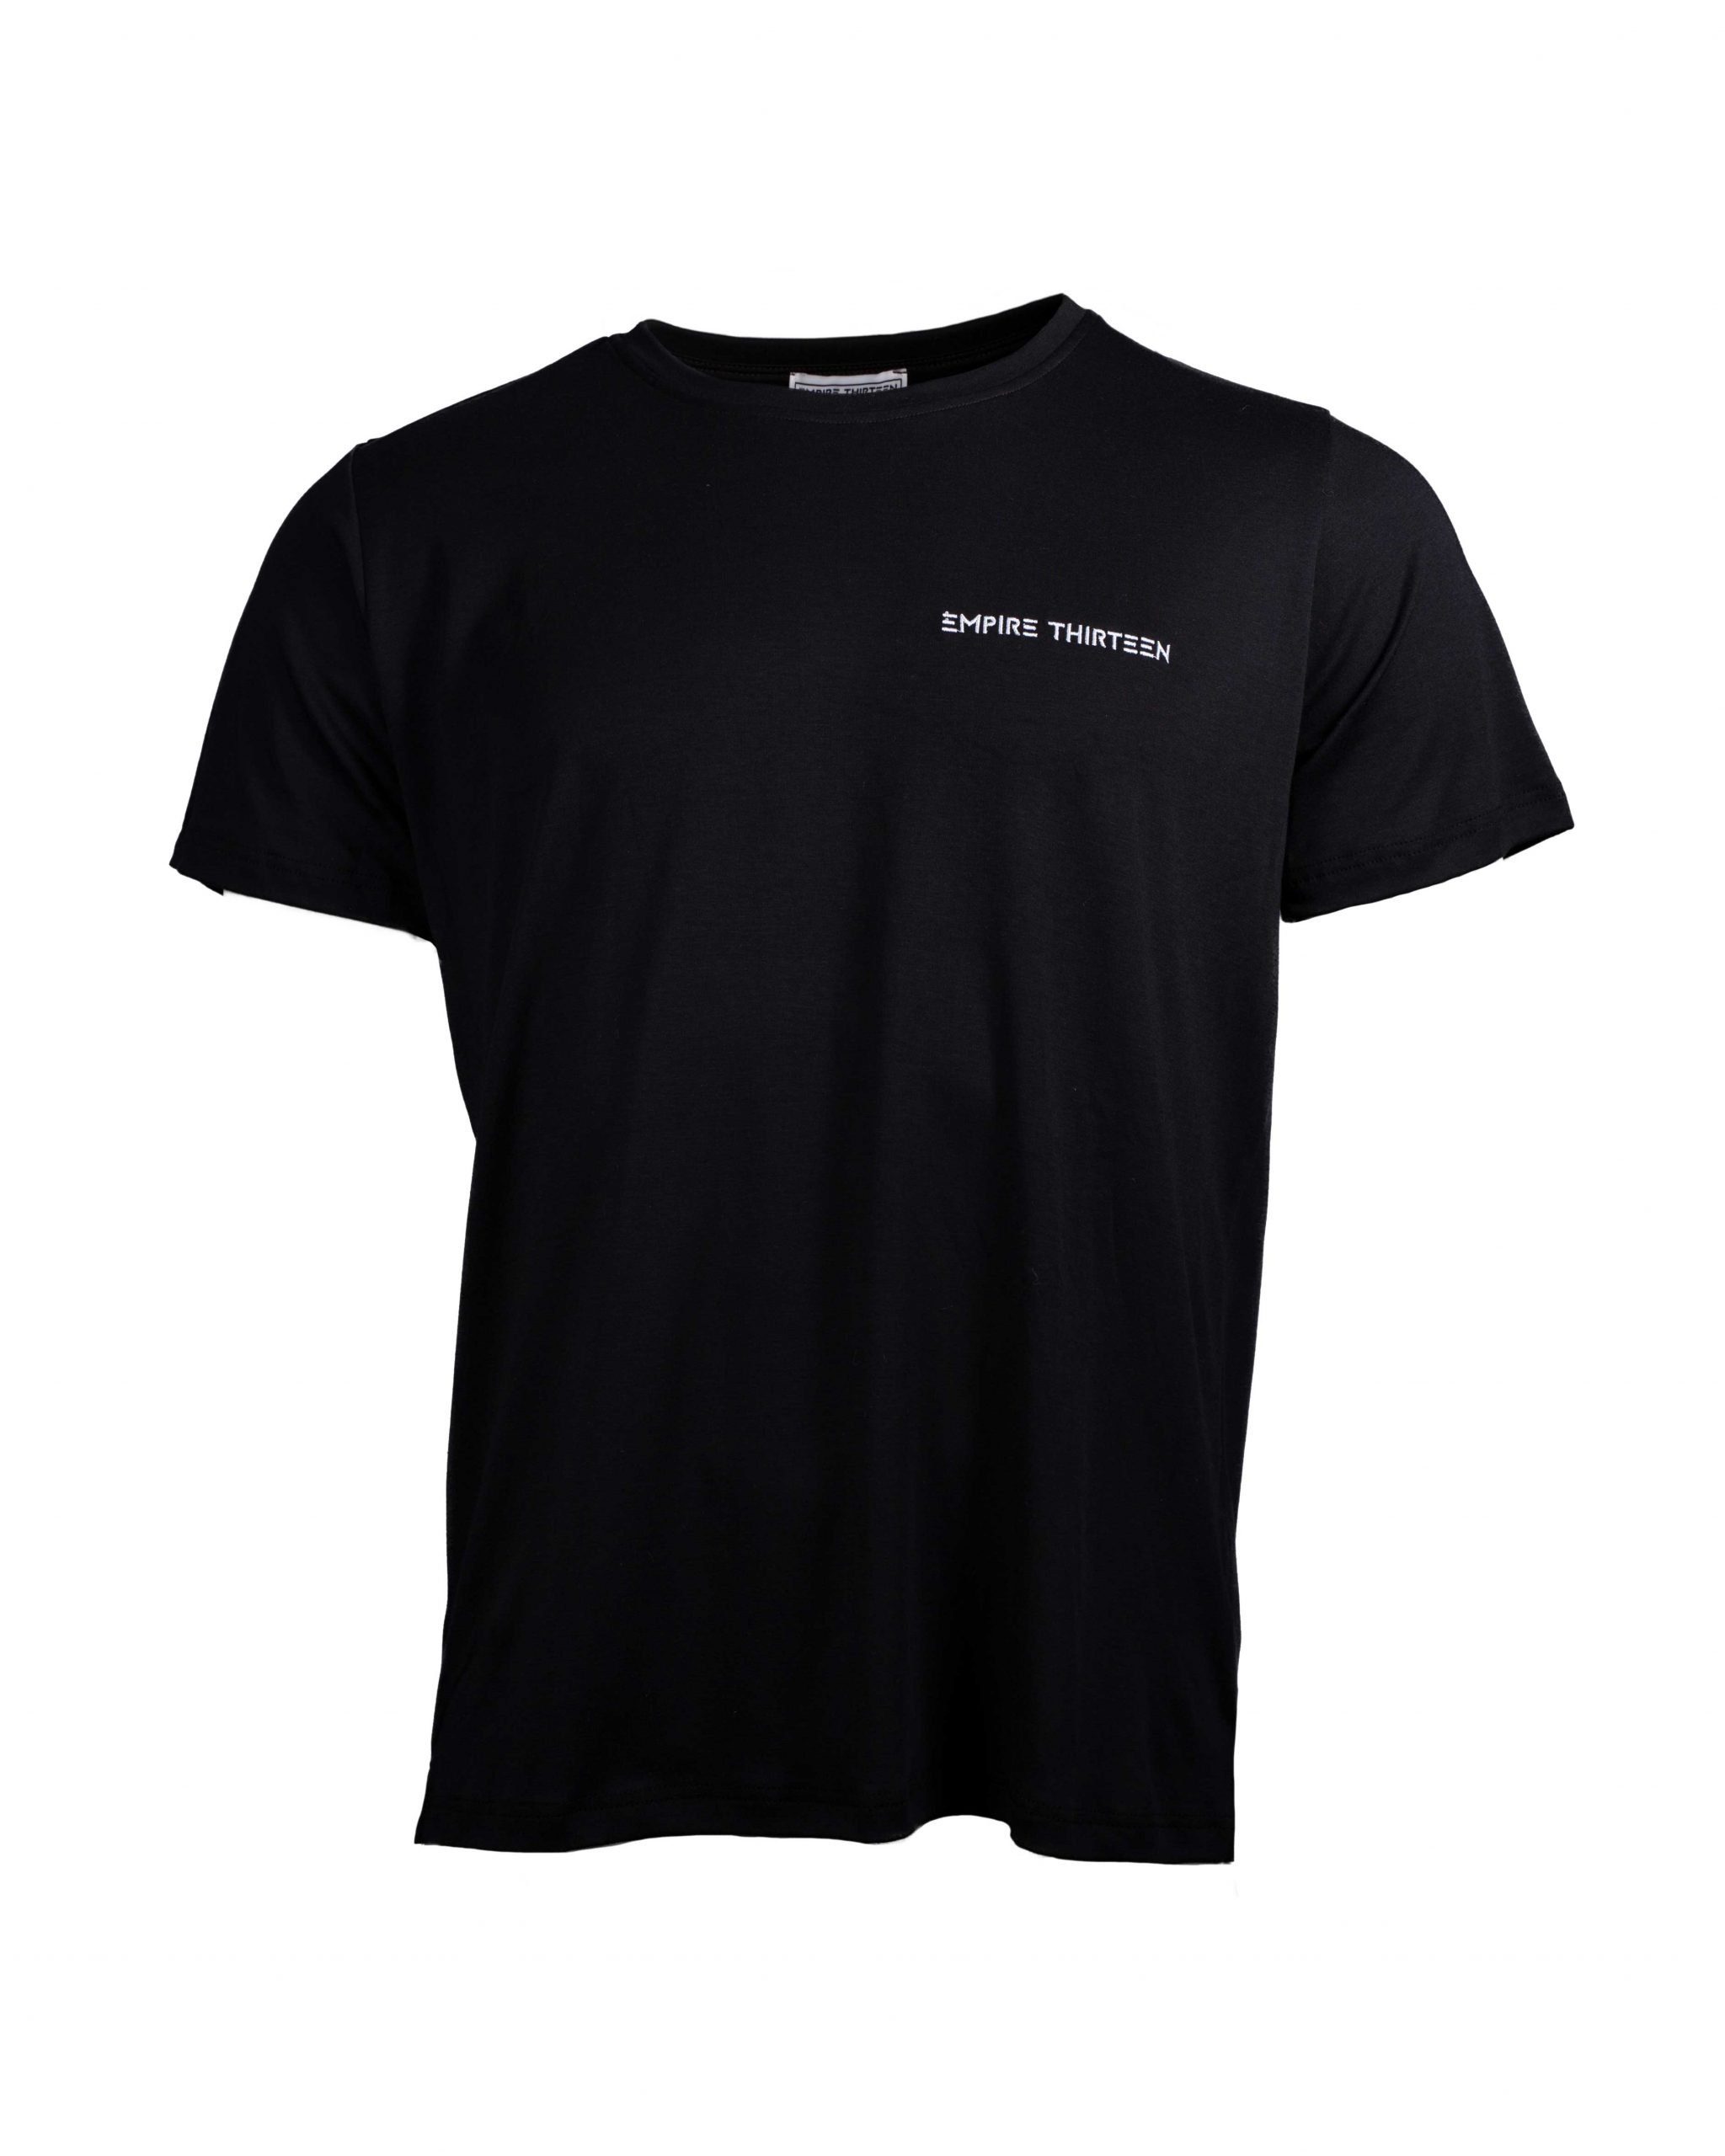 EMPIRE-THIRTEEN T-Shirt "EMPIRE-THIRTEEN" BASIC SHIRT MEN Stickerei Schwarz